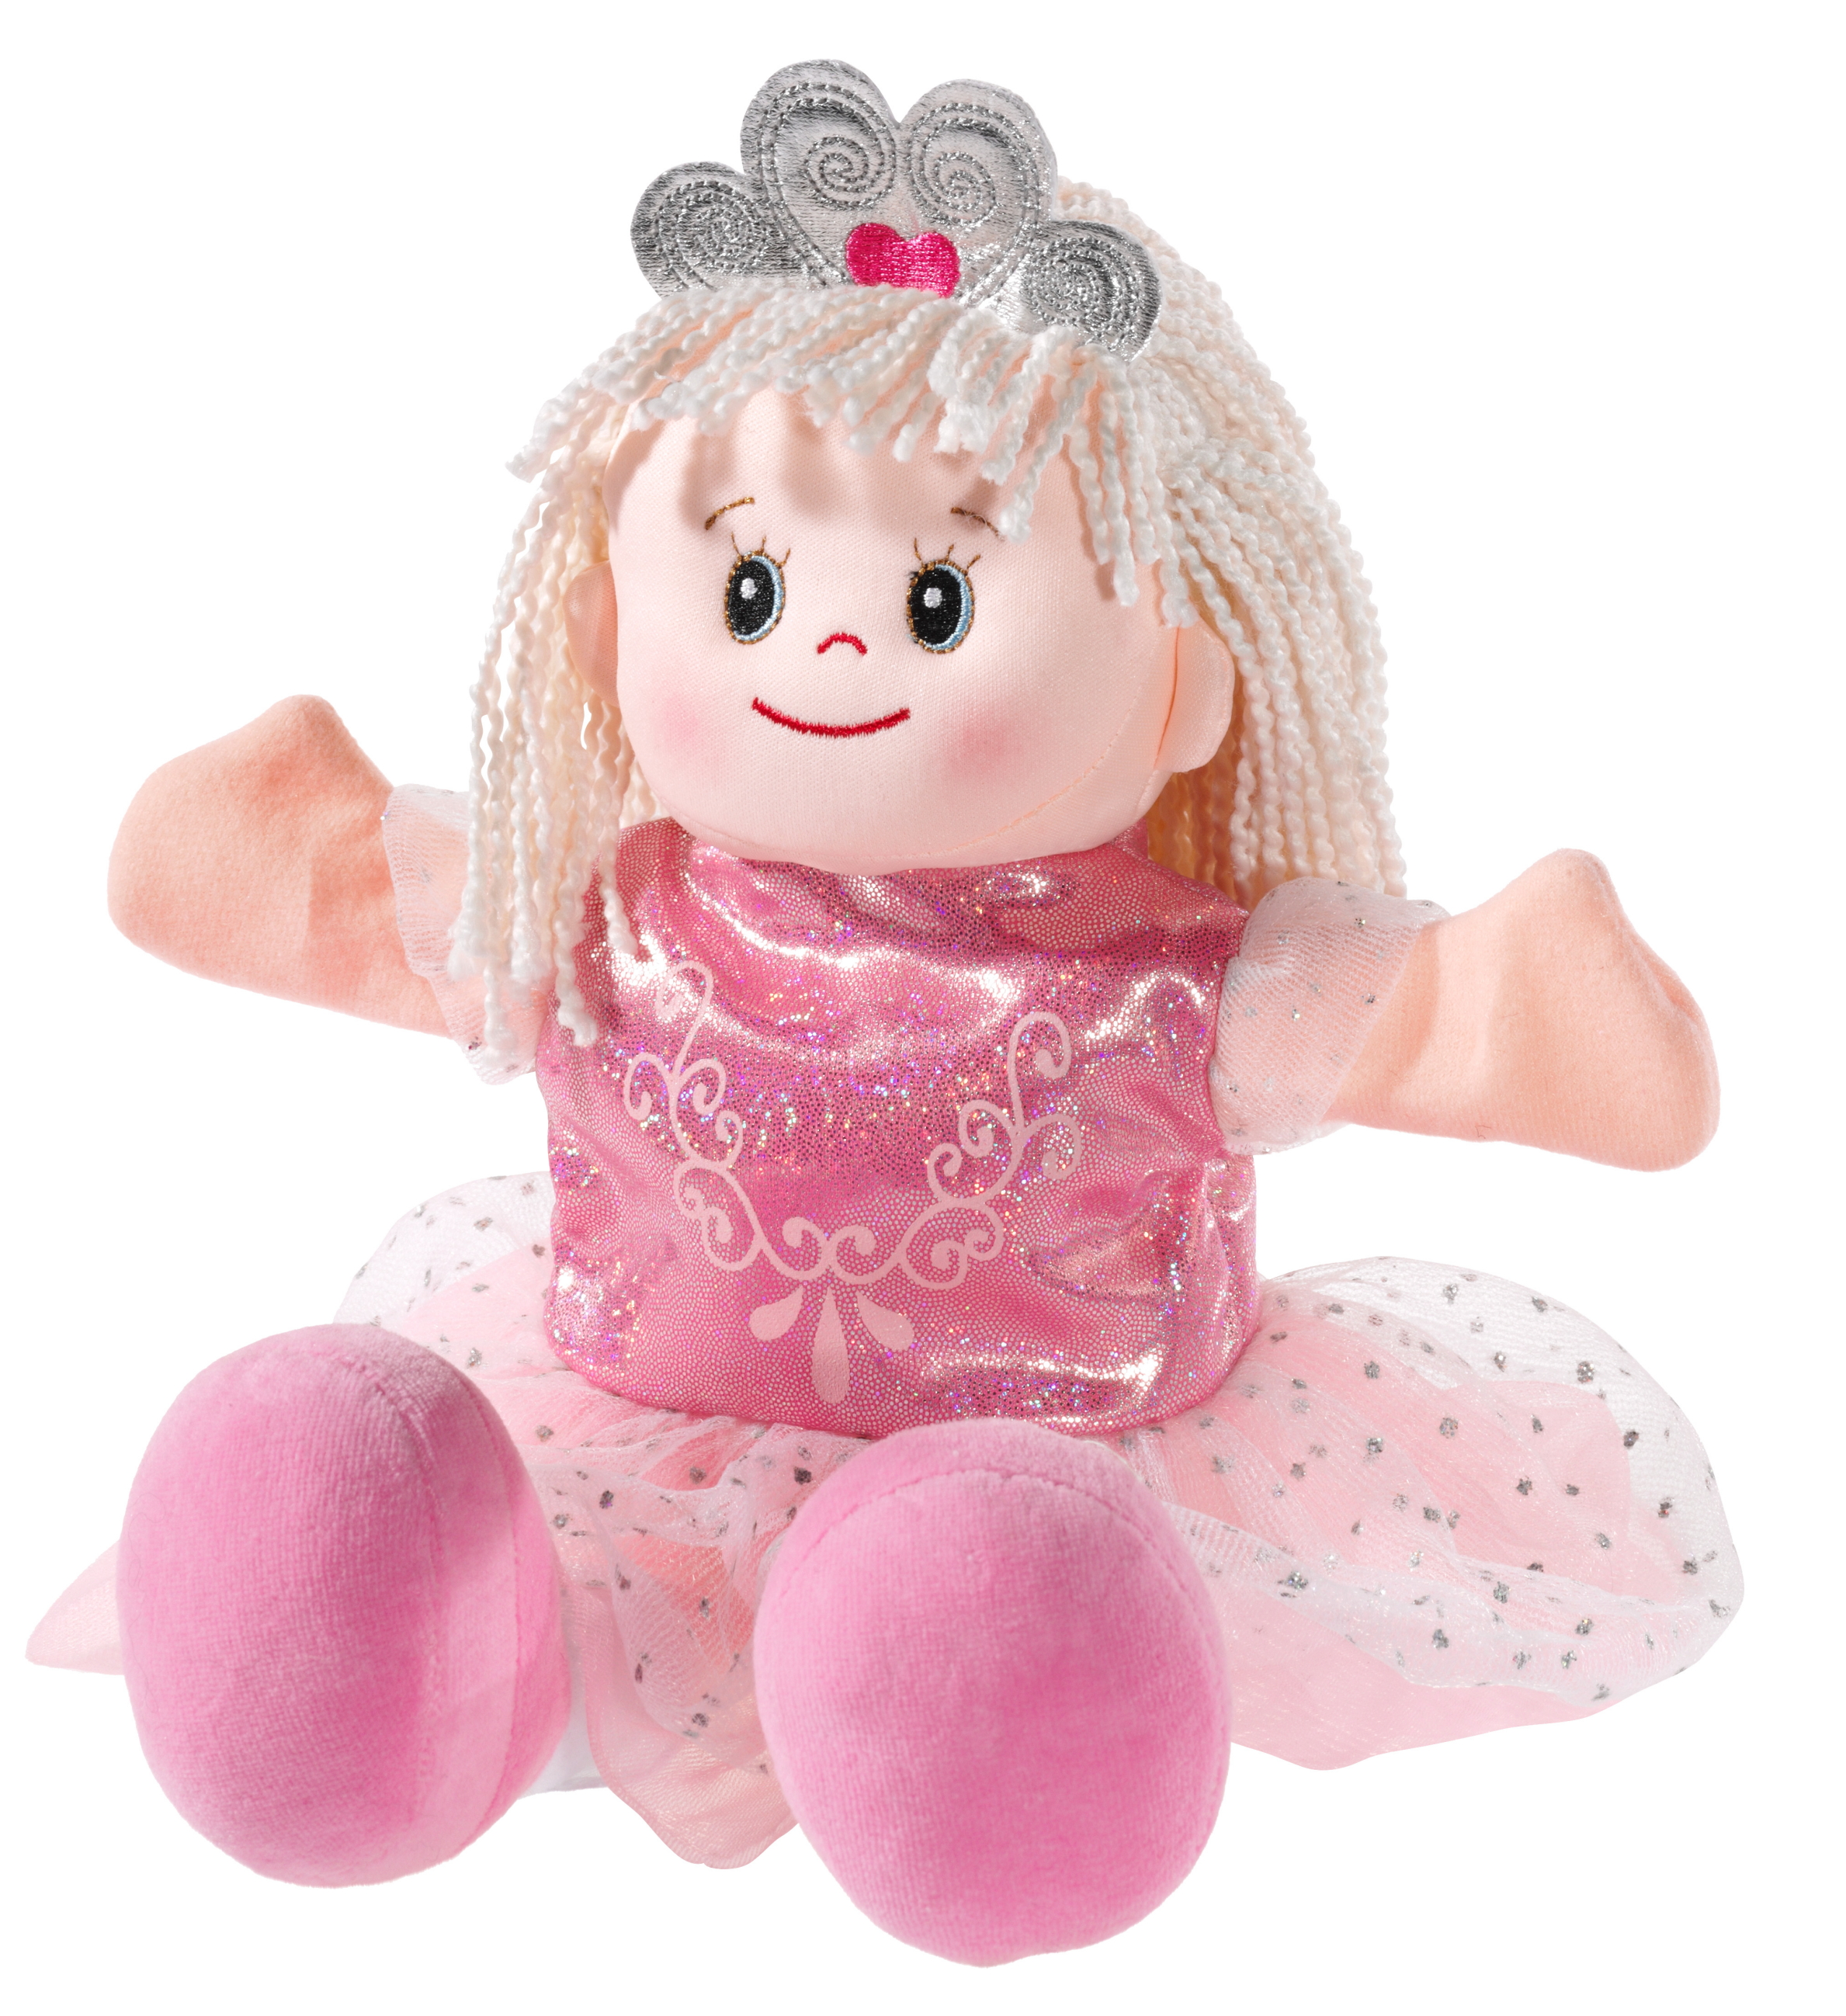 Heunec Poupetta Handspielpuppe Prinzessin im rosa Kleid, längeren blonden Haaren und Diadem